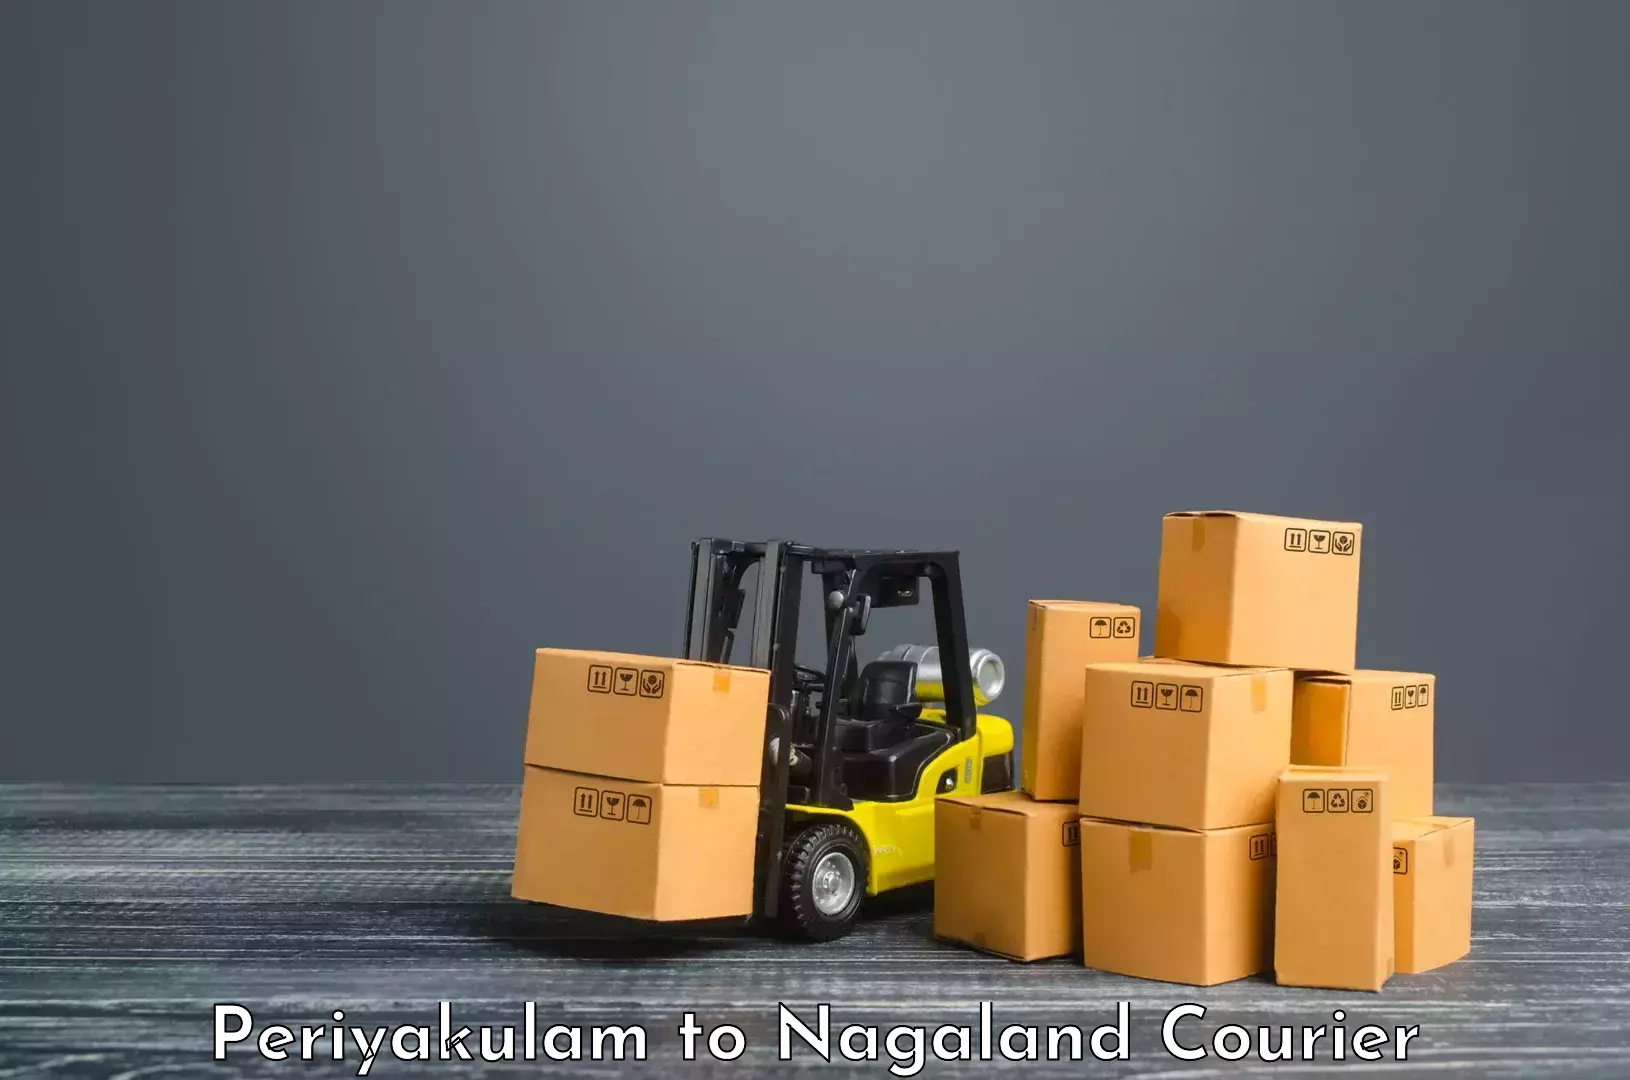 Subscription-based courier Periyakulam to Nagaland